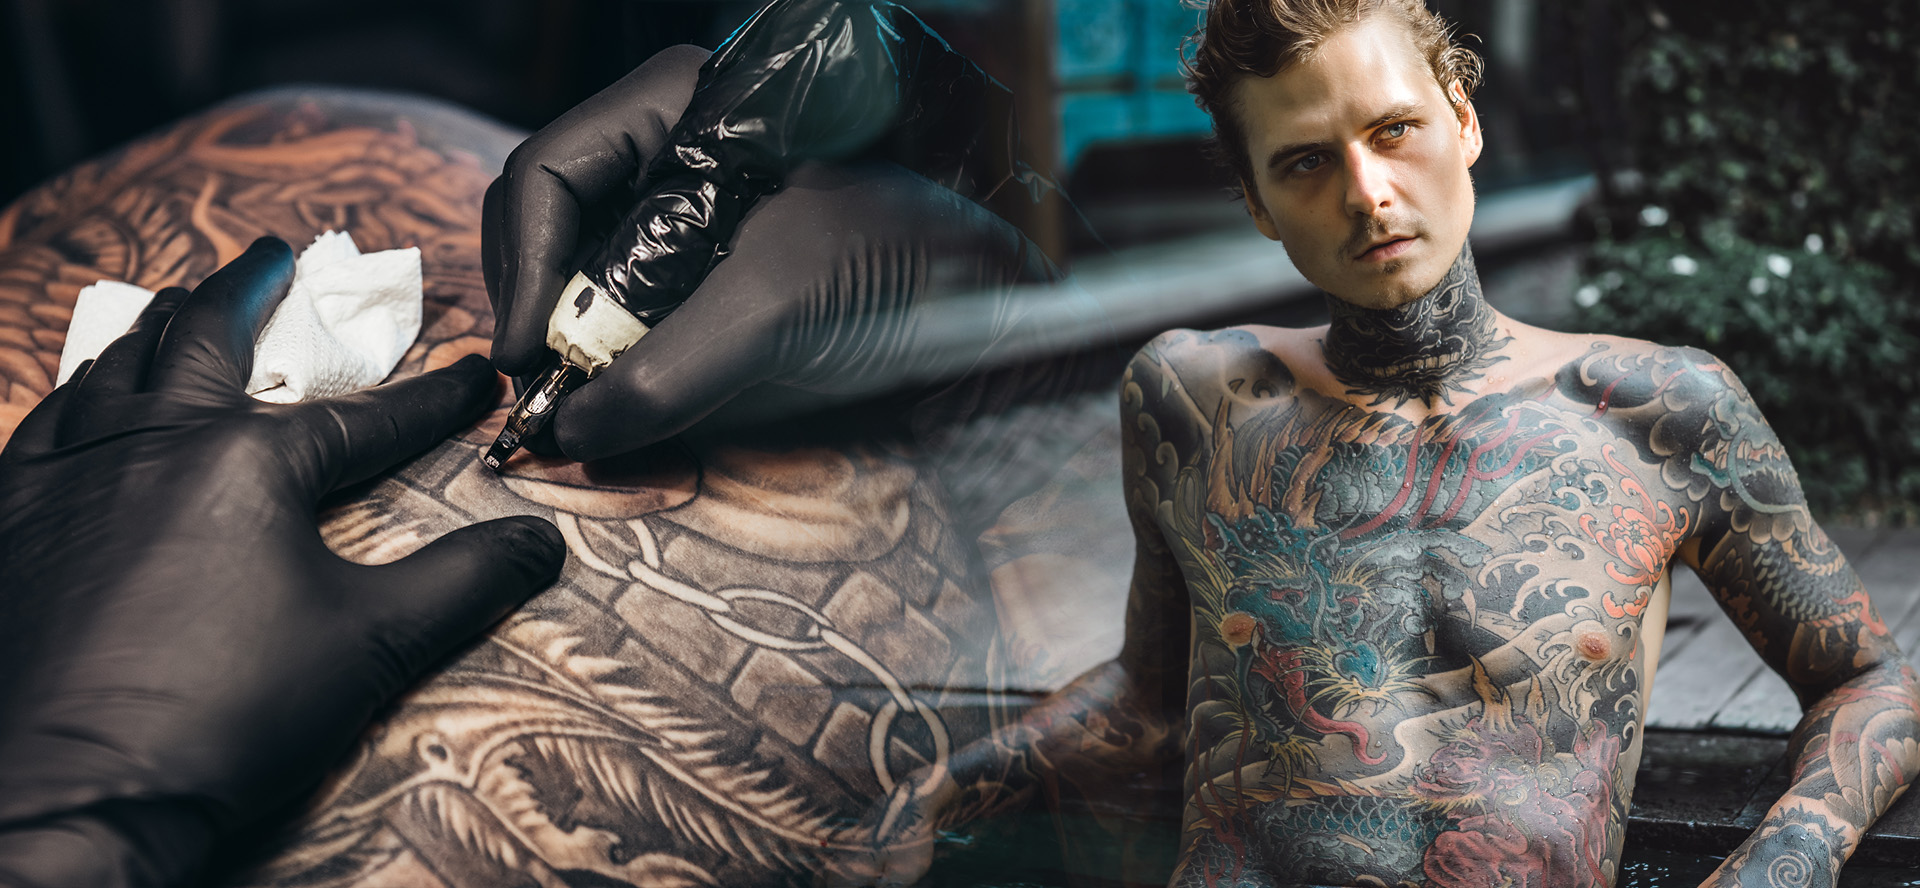 Best Bali Tattoo Studio & Tattoo Artist | Downunder Tattoo Bali